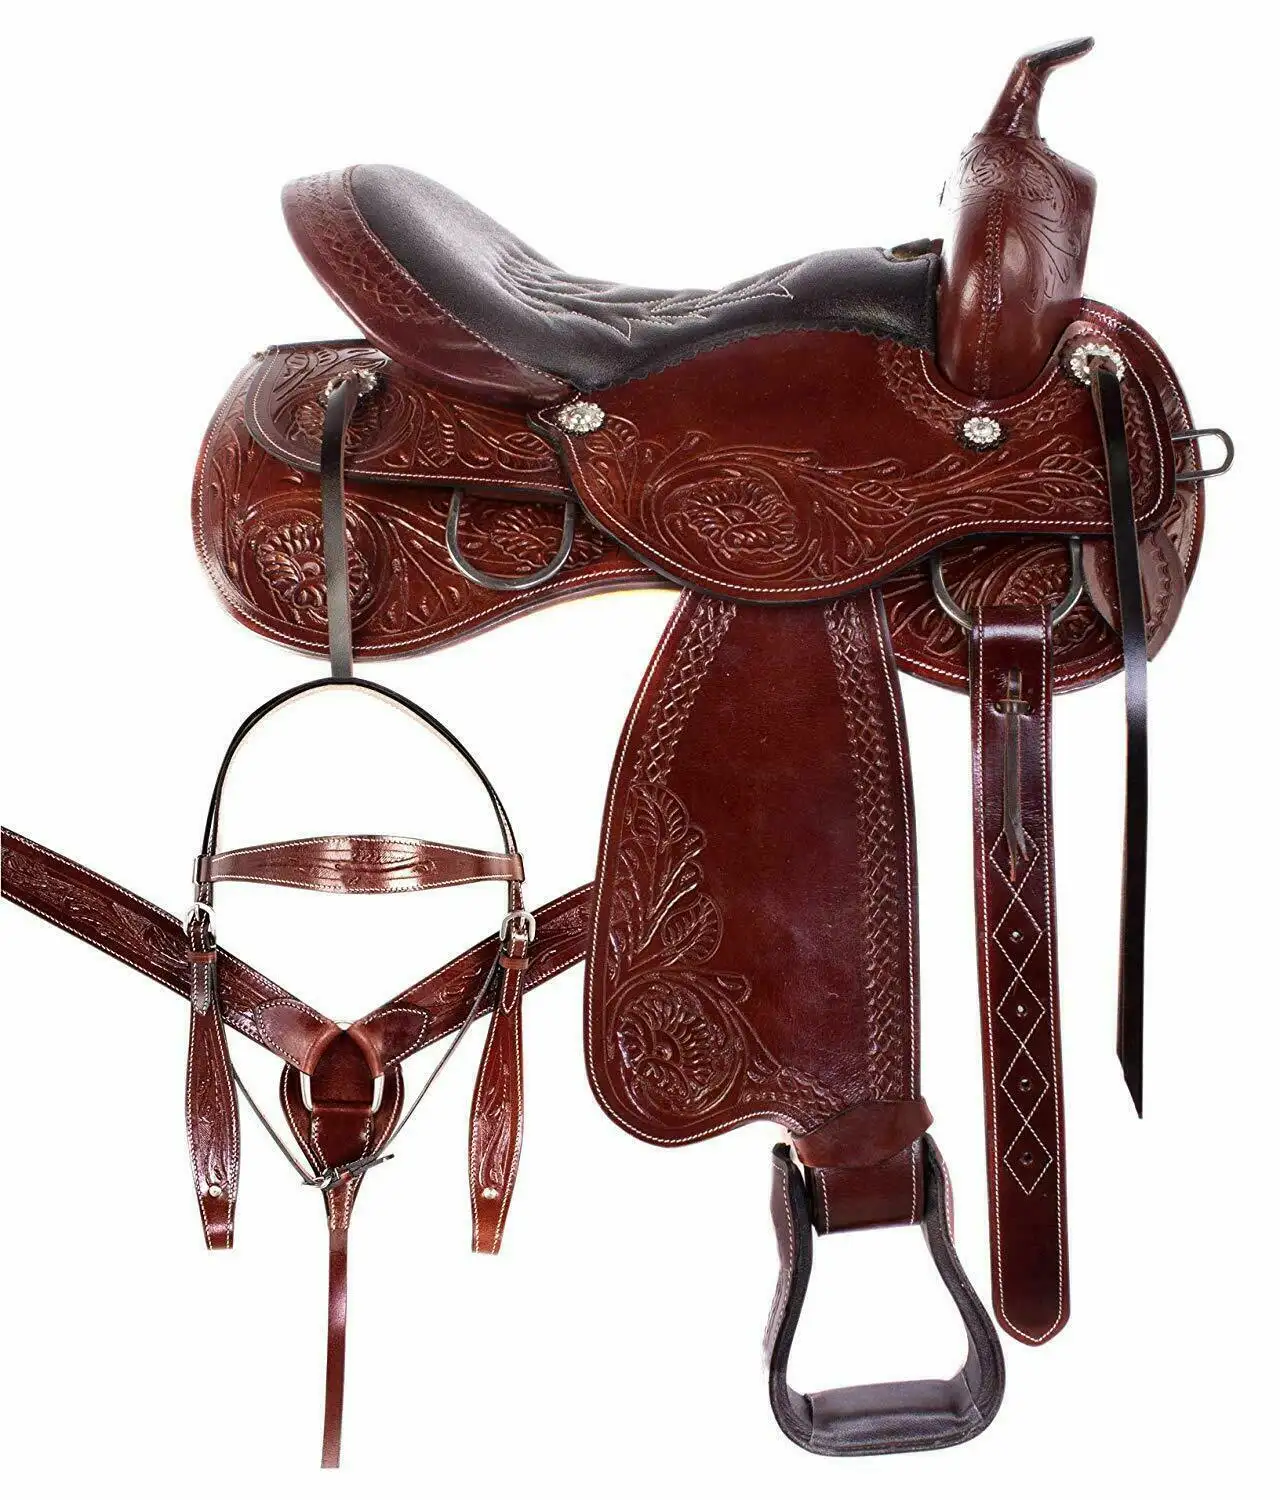 Высокое по требованию, Конное седло ручной работы из чистой кожи для верховой езды, доступно по доступной цене западное кожаное седло